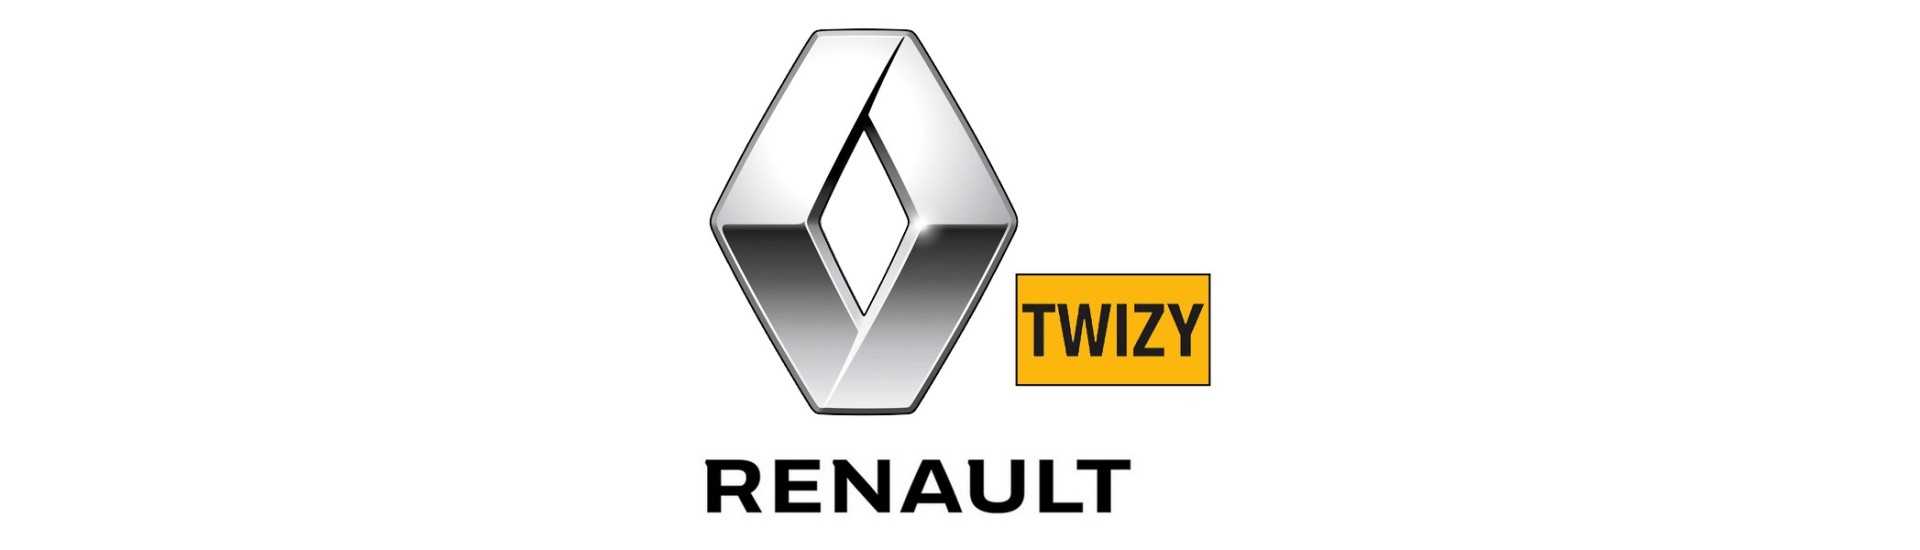 Divisore freno al miglior prezzo senza permesso Renault Twizy